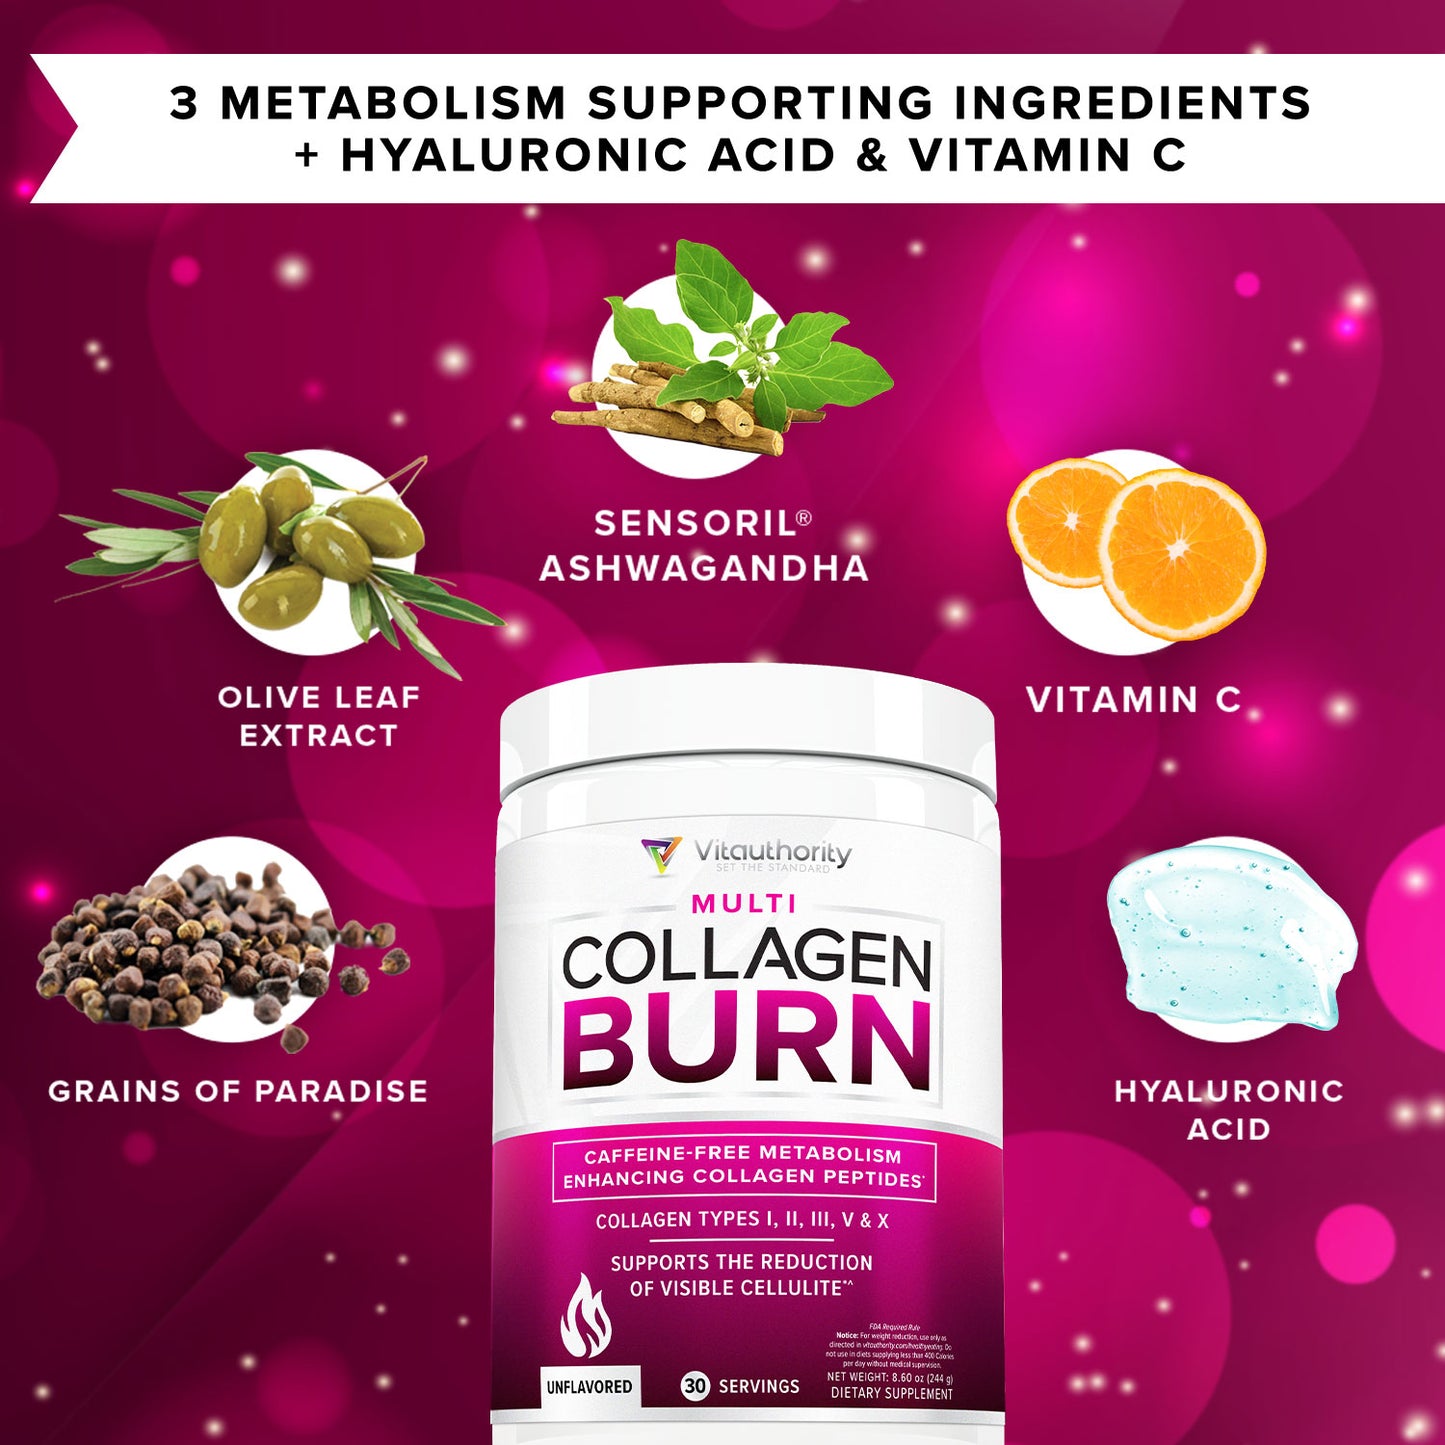 Multi Collagen Burn Powder - Unflavored